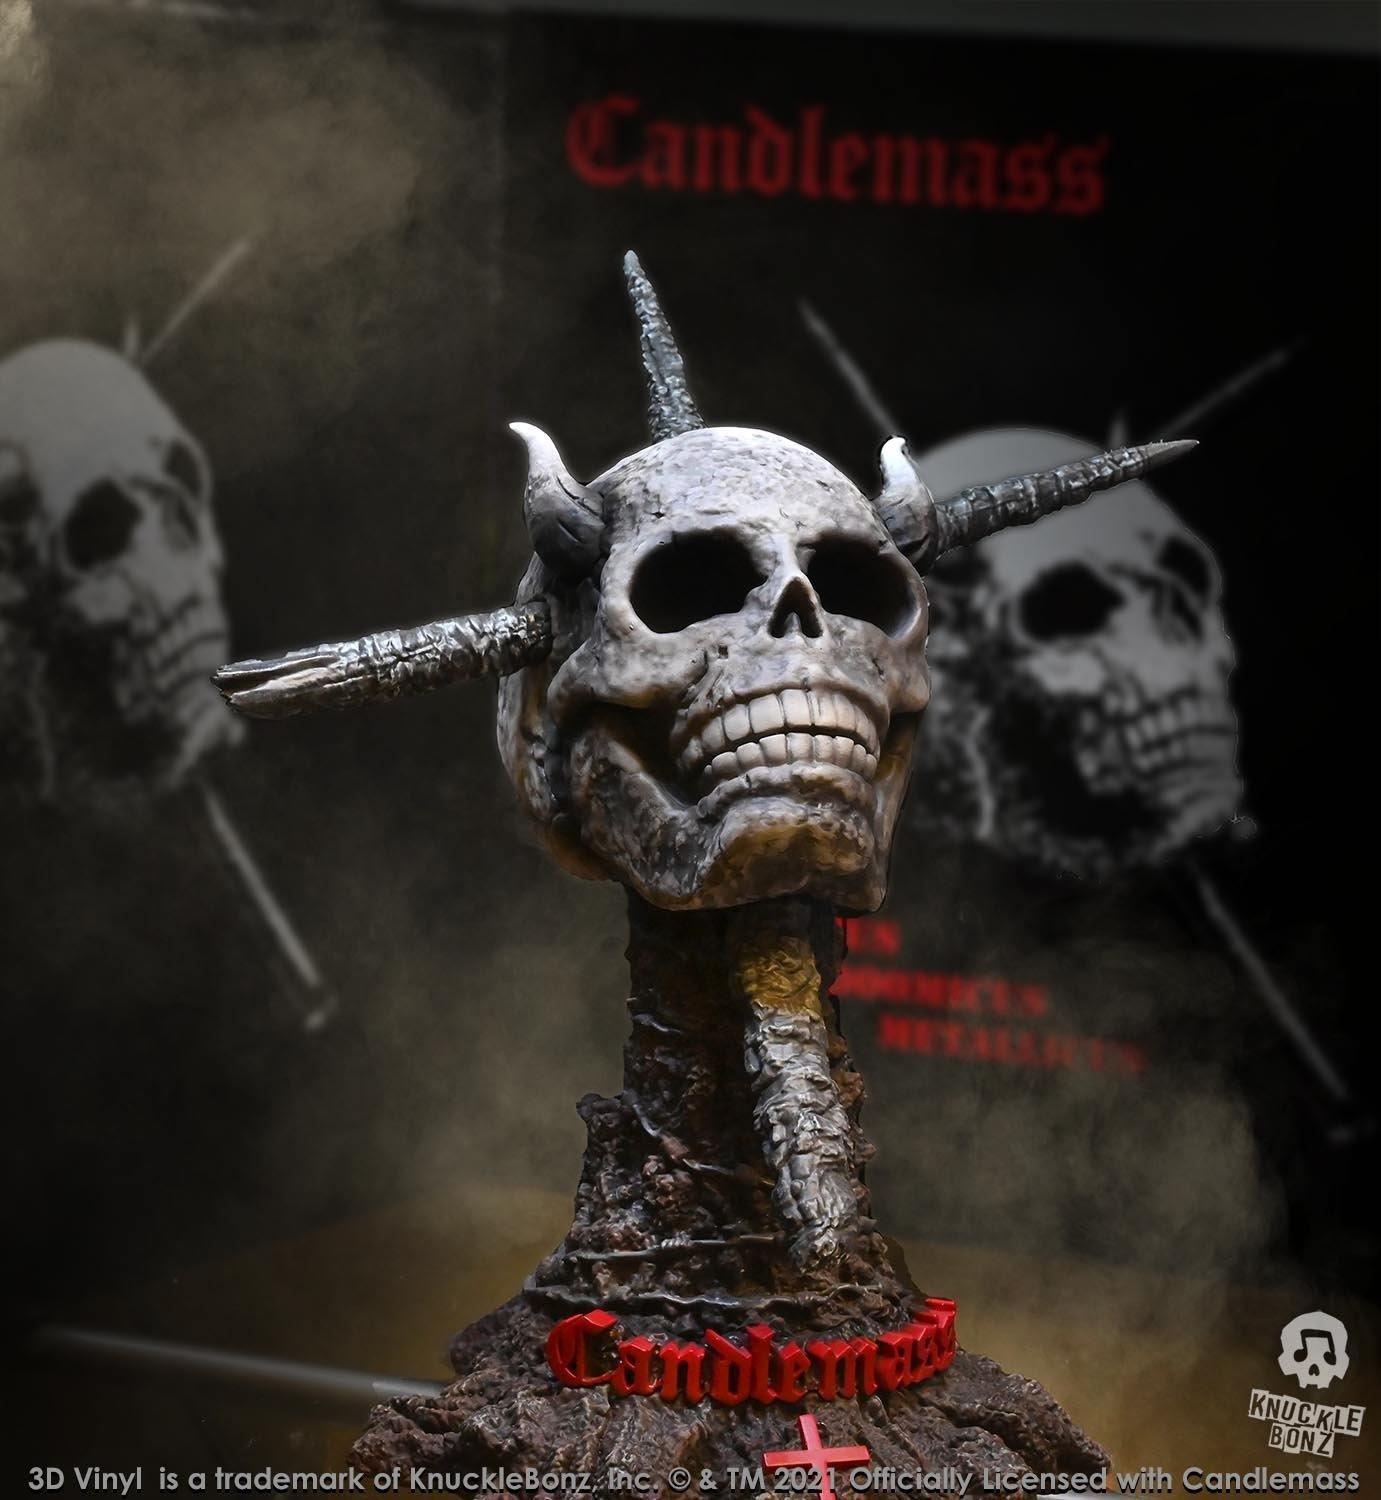 KNUCANDLEMASS3DV100 Candlemass - 3D Vinyl Statue - KnuckleBonz - Titan Pop Culture